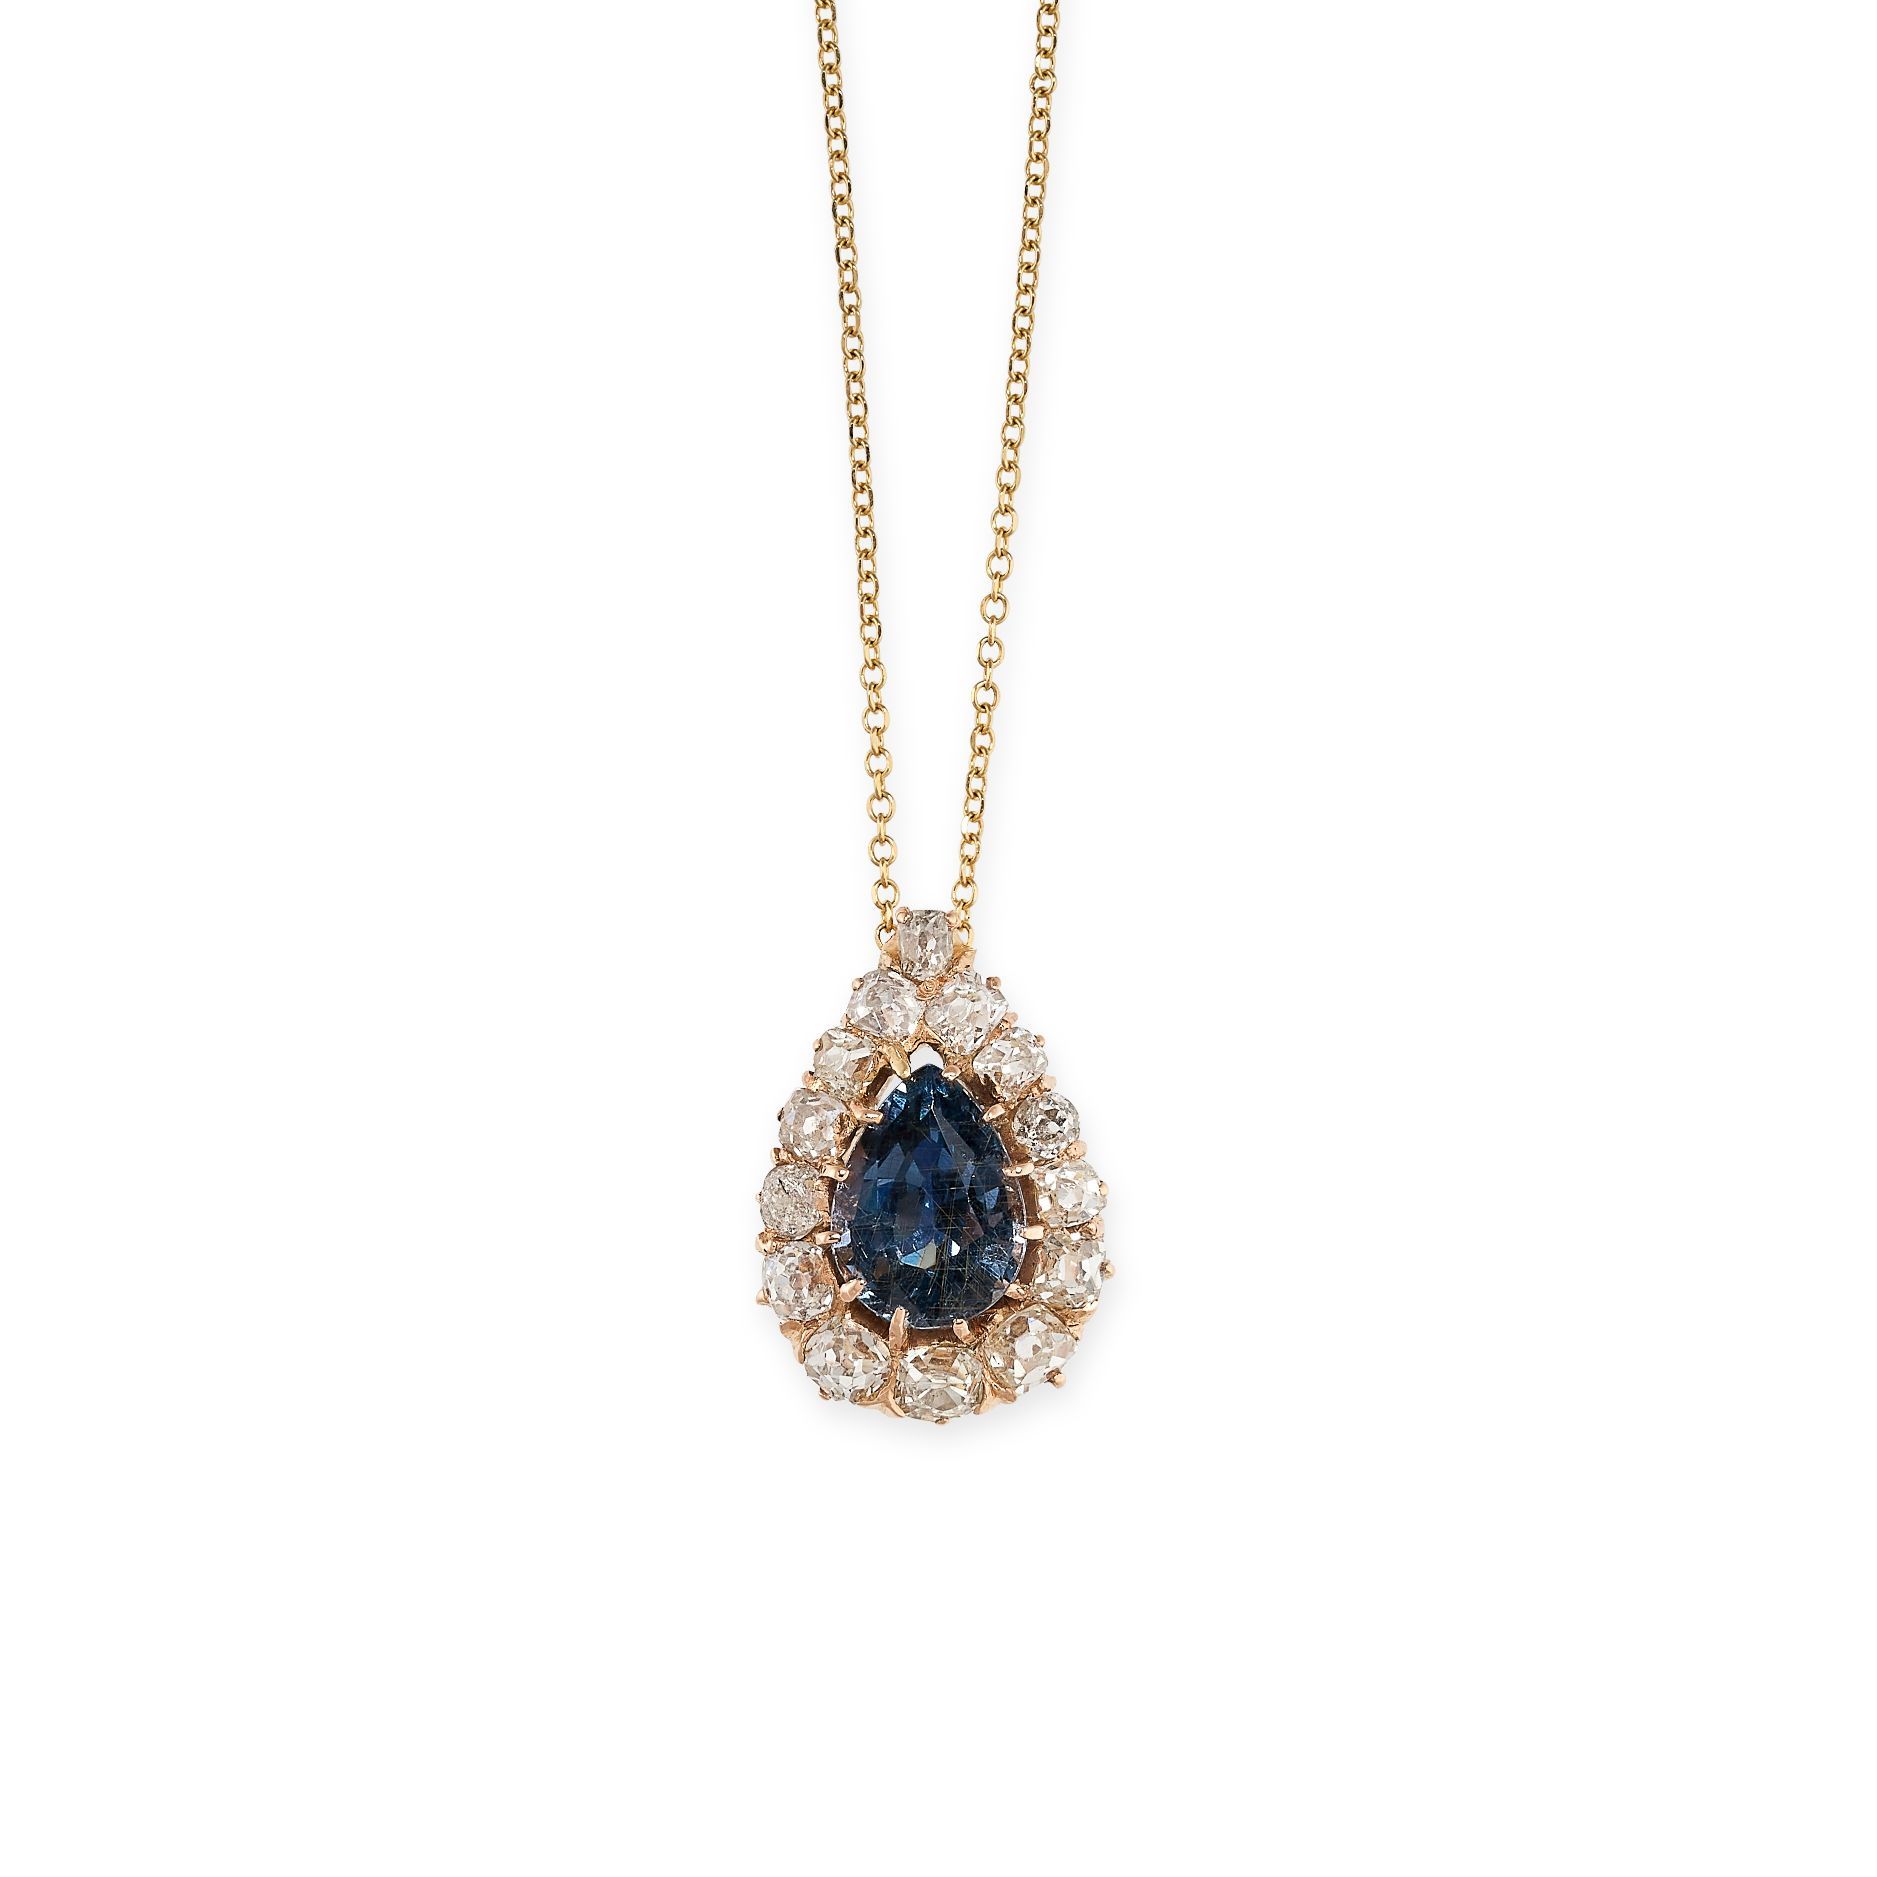 Null 一条18K黄金蓝色尖晶石和钻石吊坠项链，镶有梨形尖晶石和老式切割钻石，链子上印有750，1.5厘米，链长43.0厘米，重2.8克。